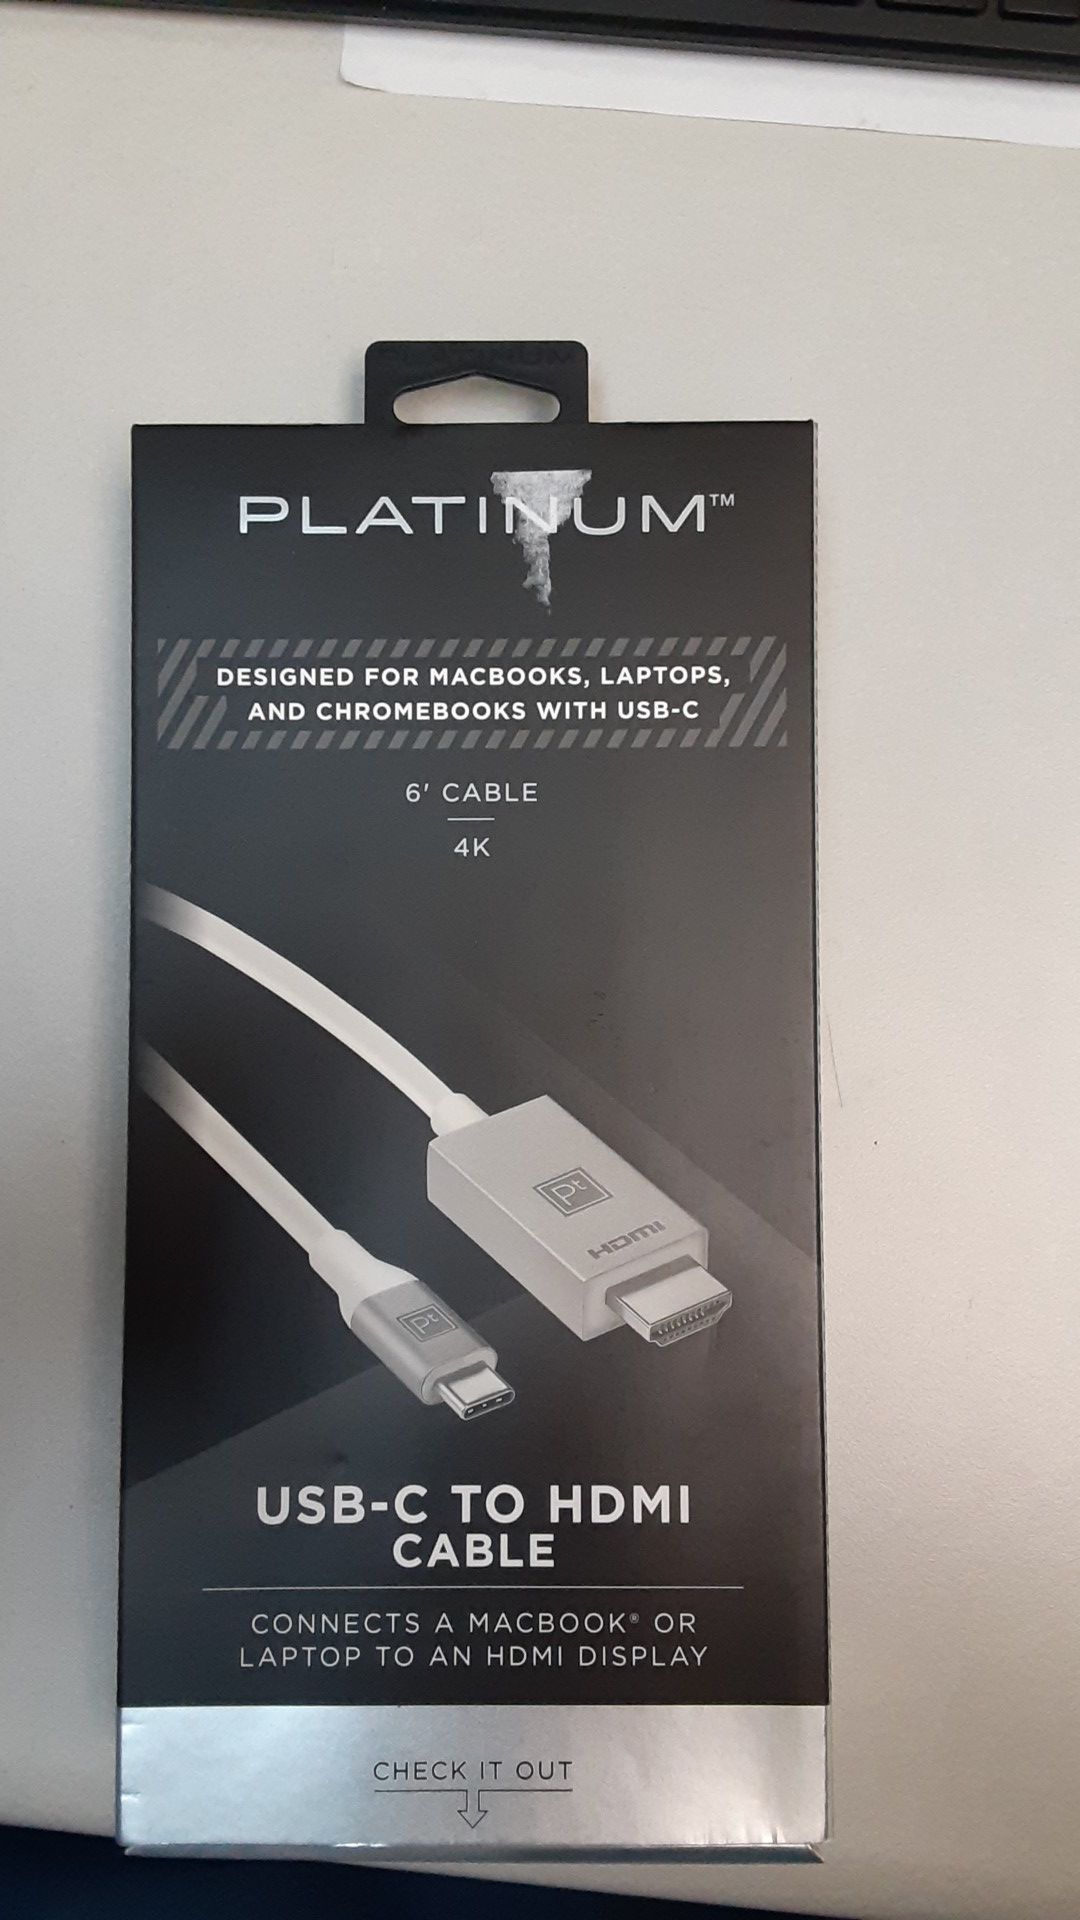 Platinum USB-C to HDMI cable.